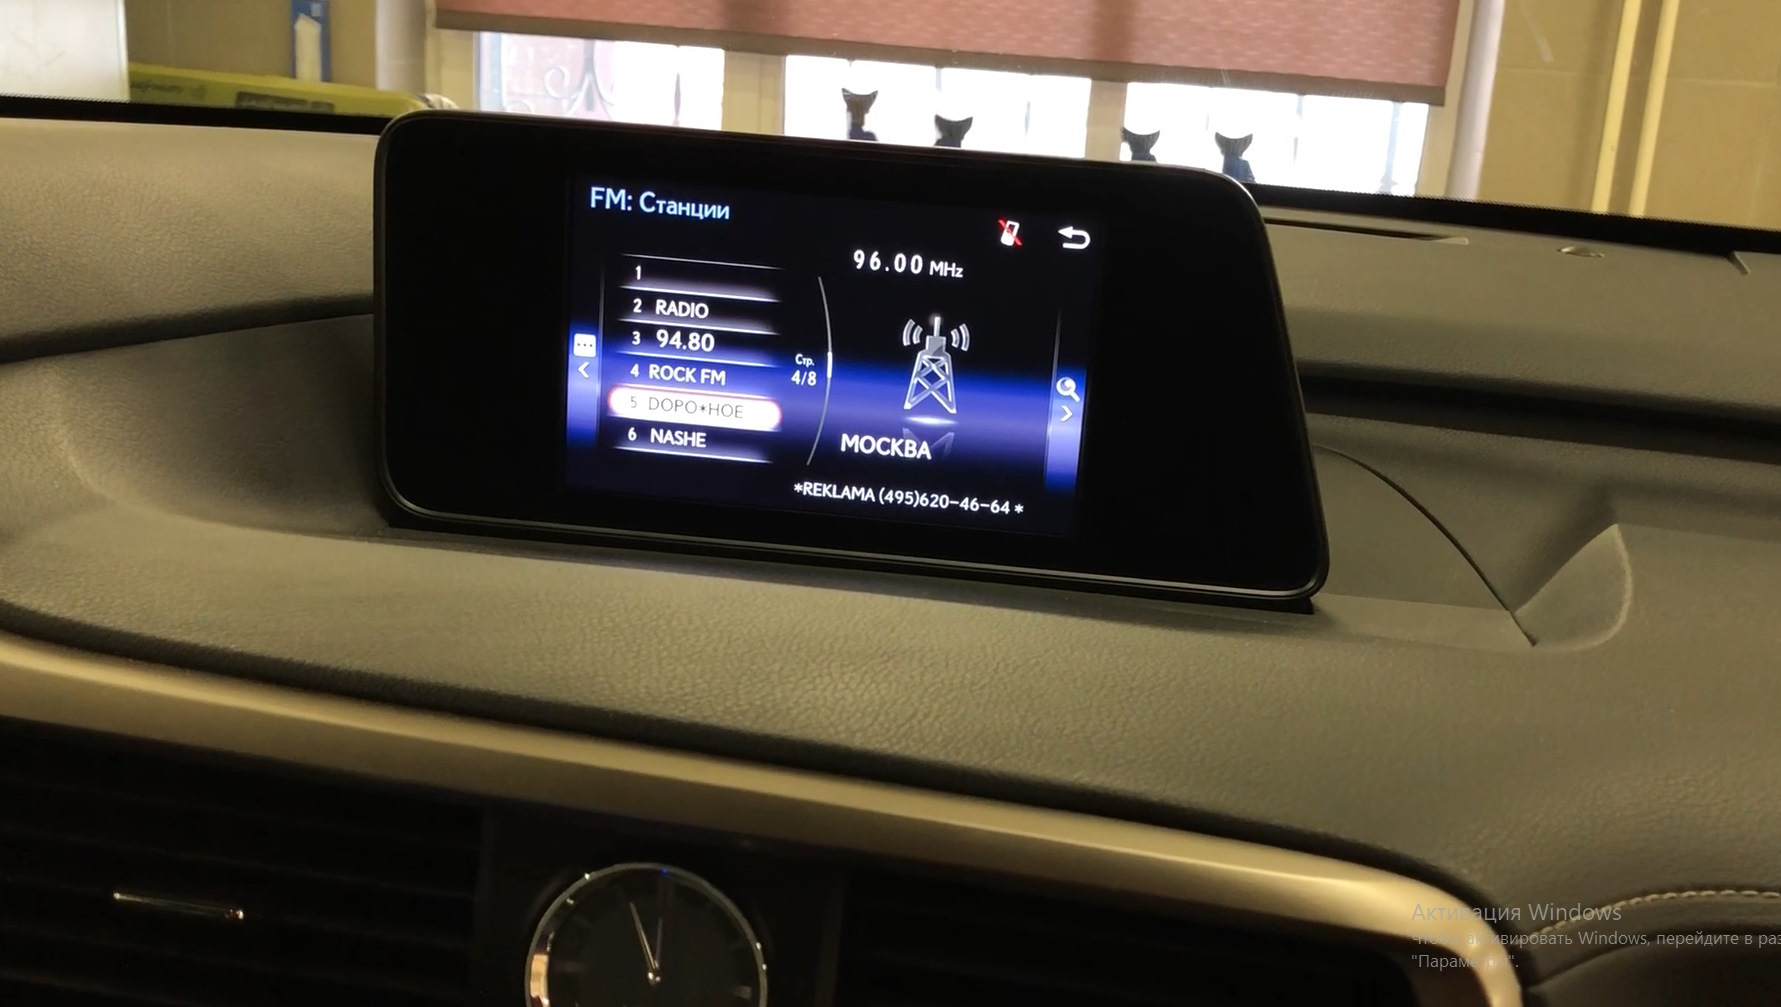 Увеличенный монитор для Lexus RX. Lexus display. Где купить качественную рамку для магнитолы 9 дюймов на Лексус РХ. Расширенный дисплей